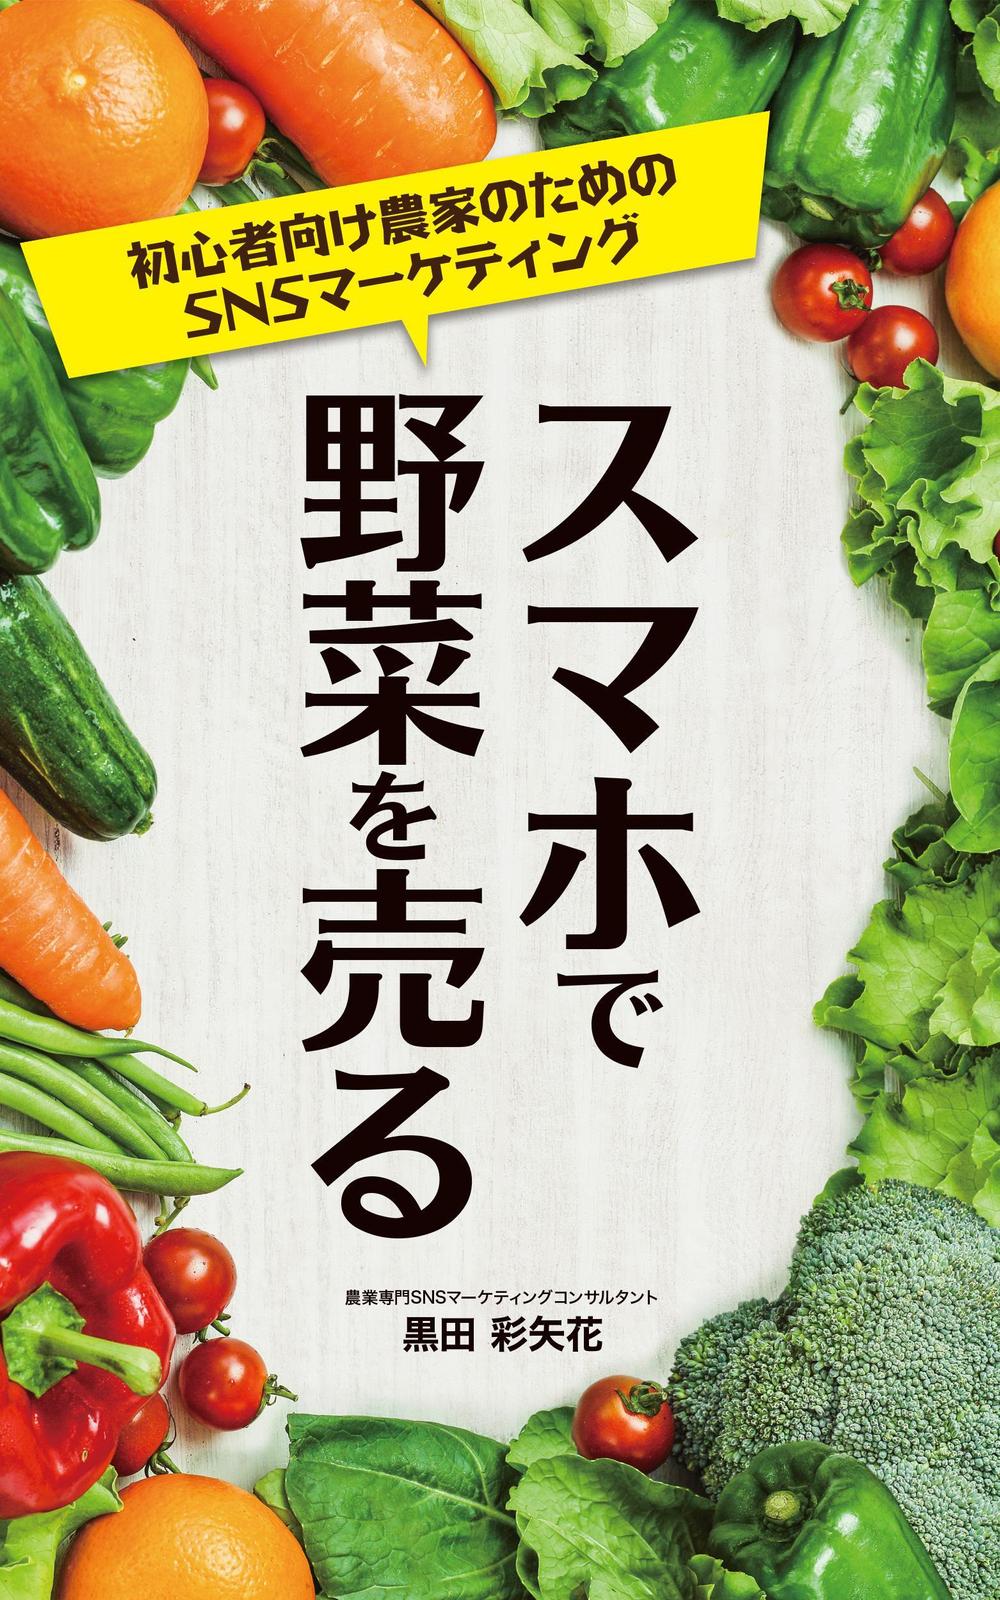 スマホで野菜を売る_松村.jpg